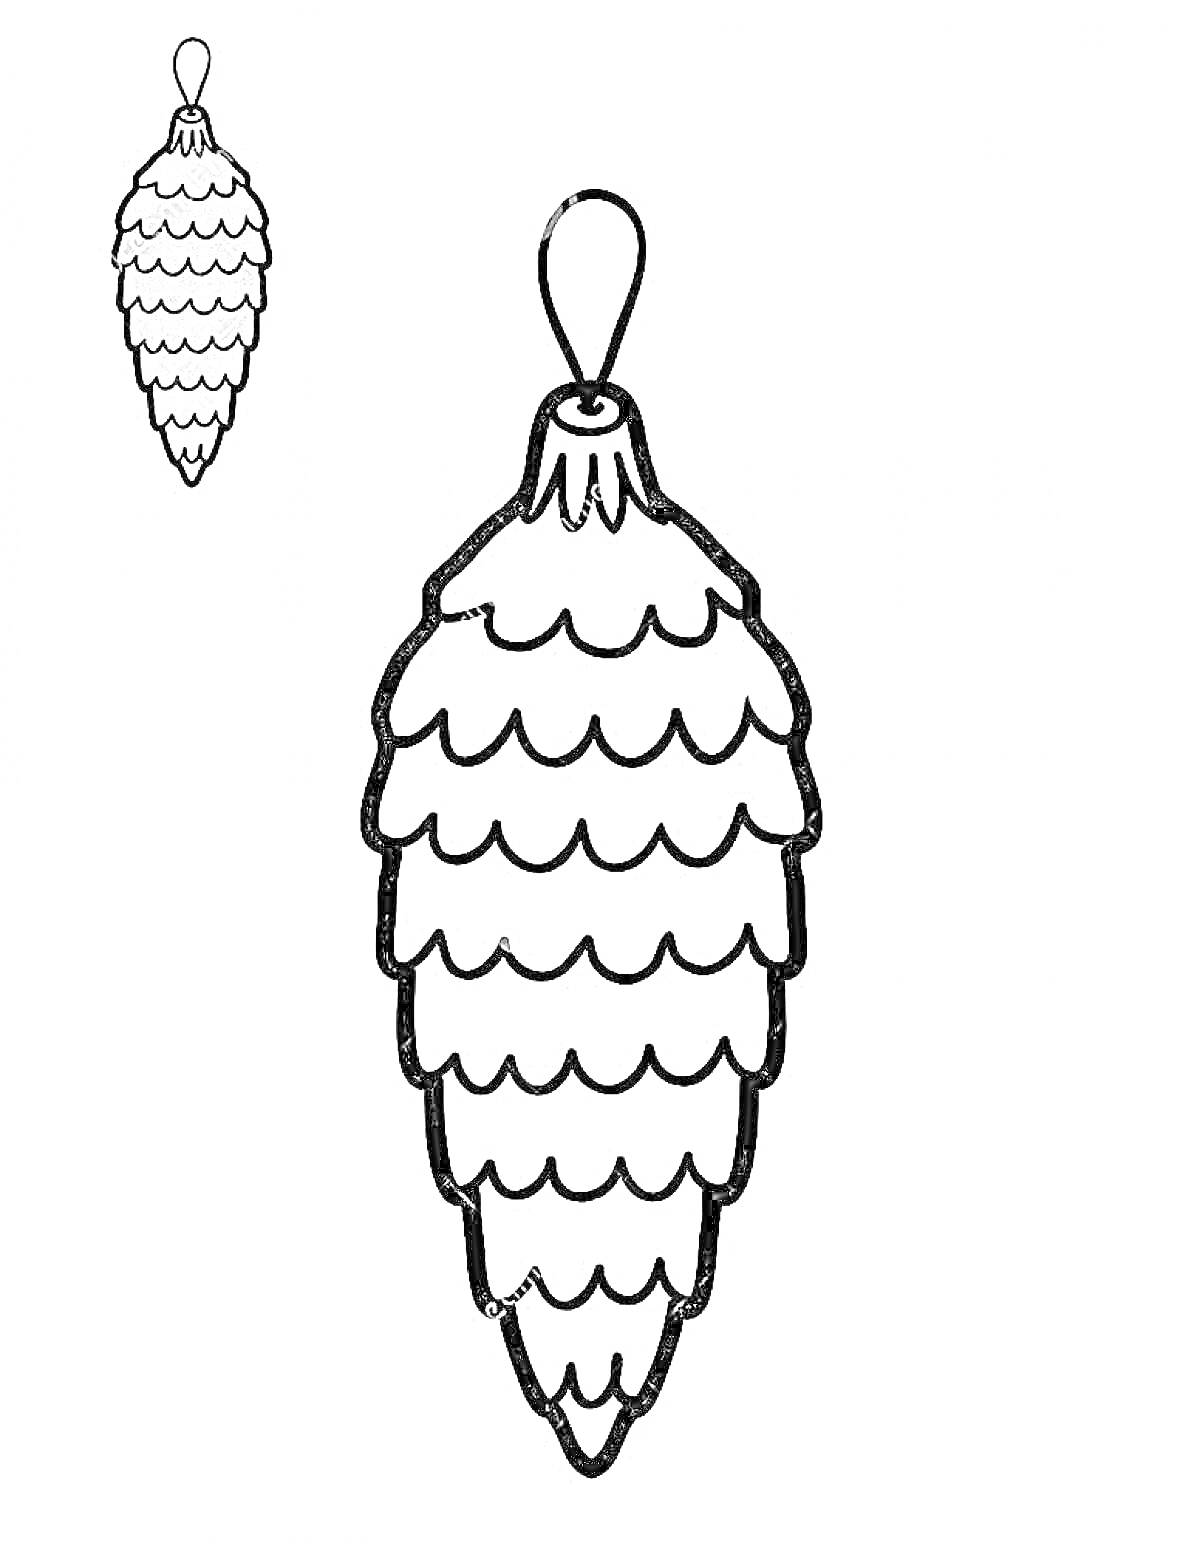 Раскраска Шишка с петлей для подвешивания. Пример раскрашенной шишки в правом верхнем углу.